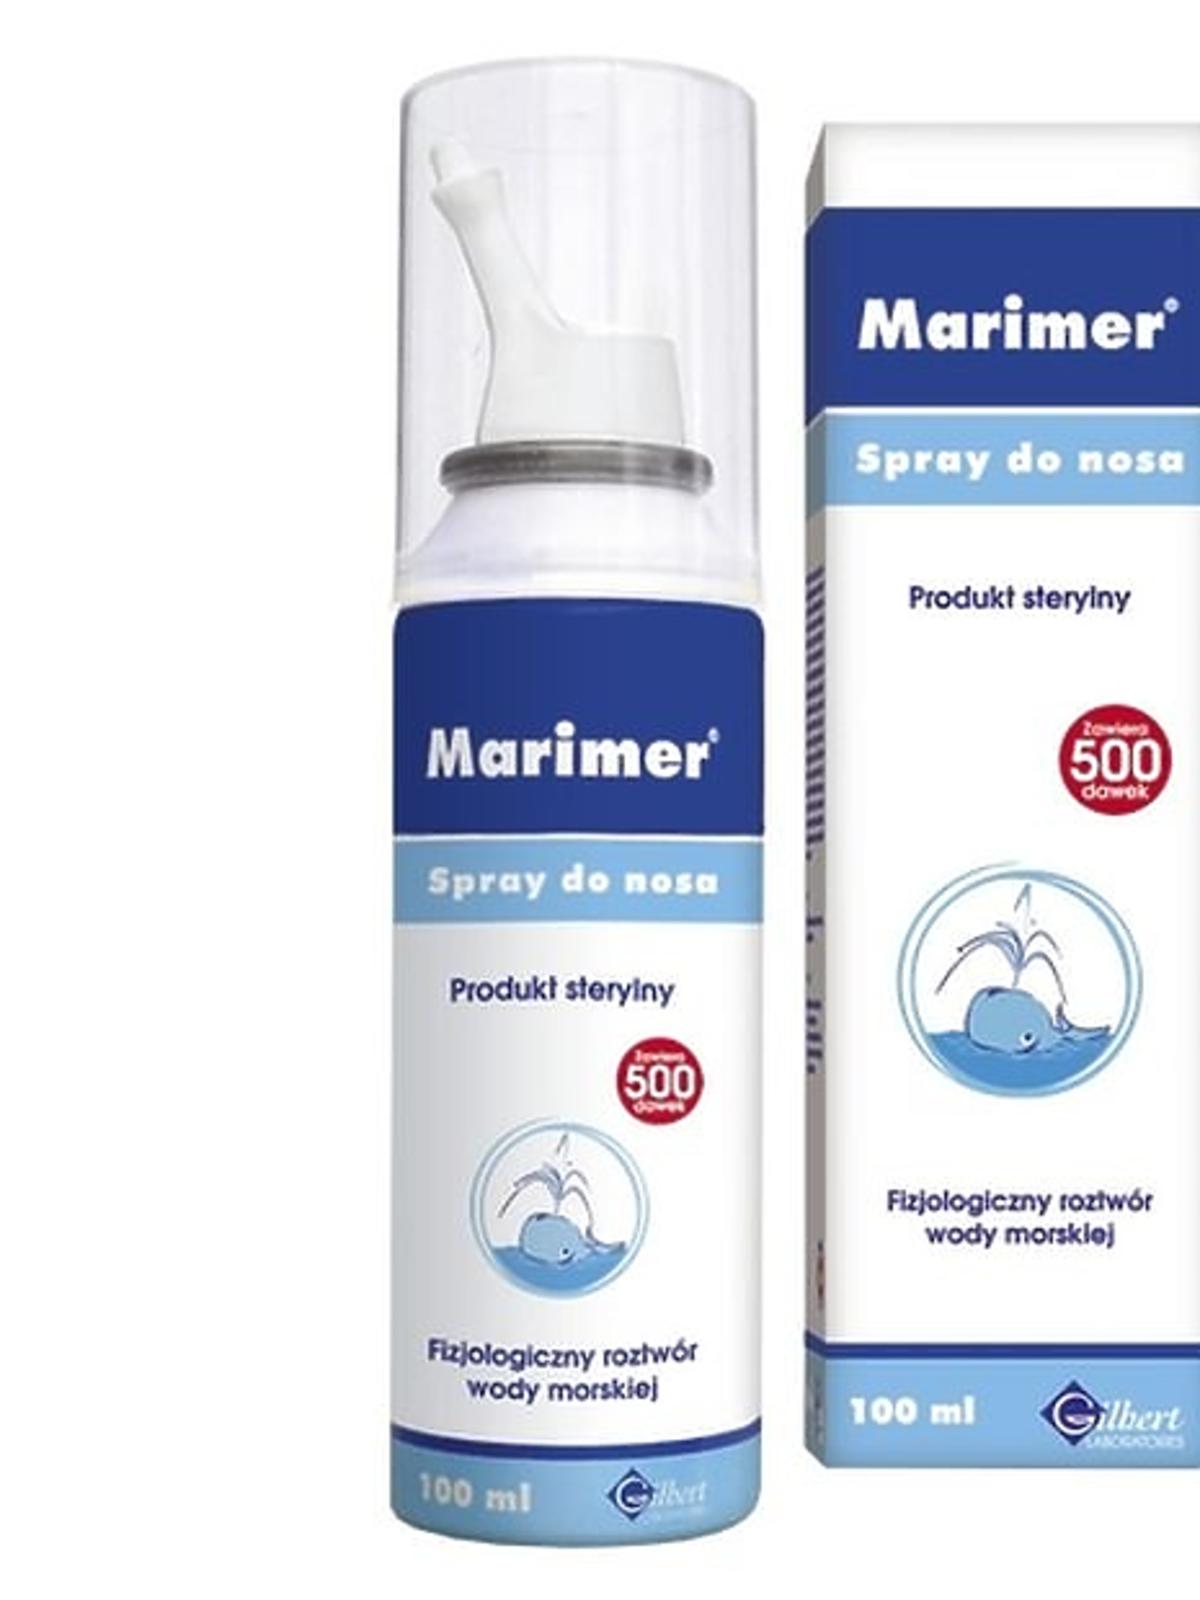 woda morska do nosa Marimer izotoniczny roztwór wody morskiej, Laboratoires Glibert, cena ok. 21 zł